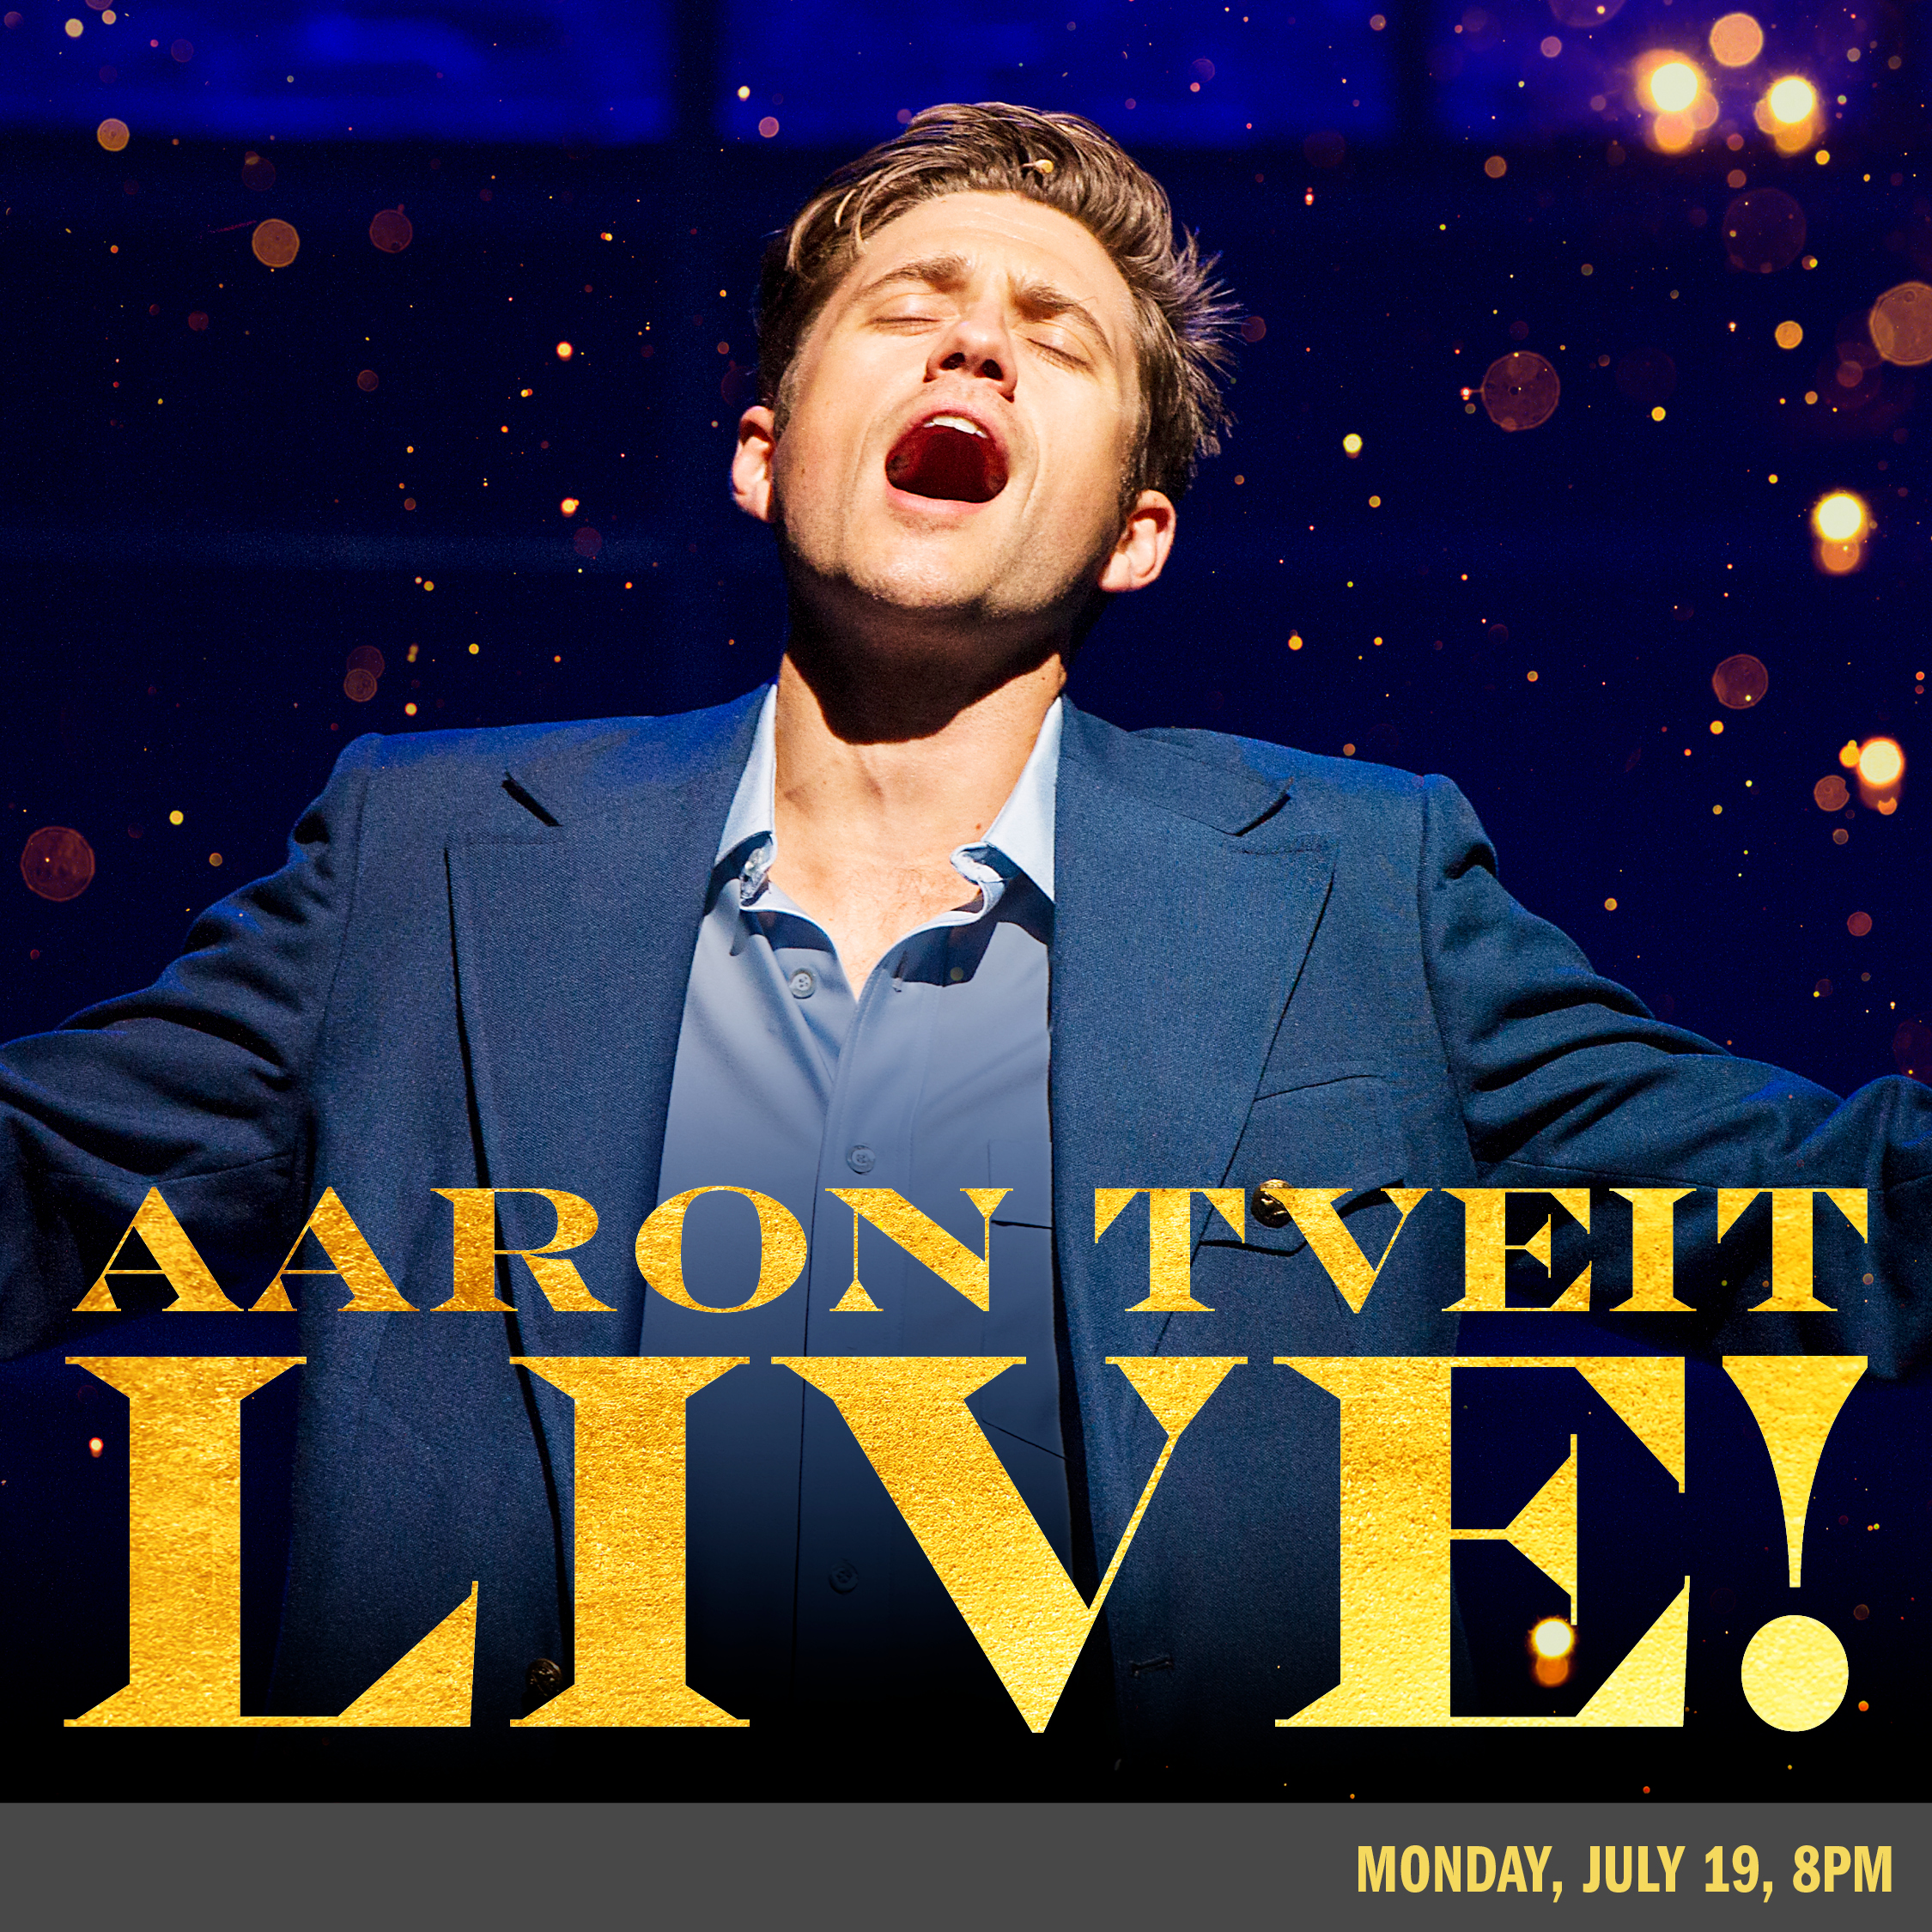 BSC presents Aaron Tveit LIVE! in concert